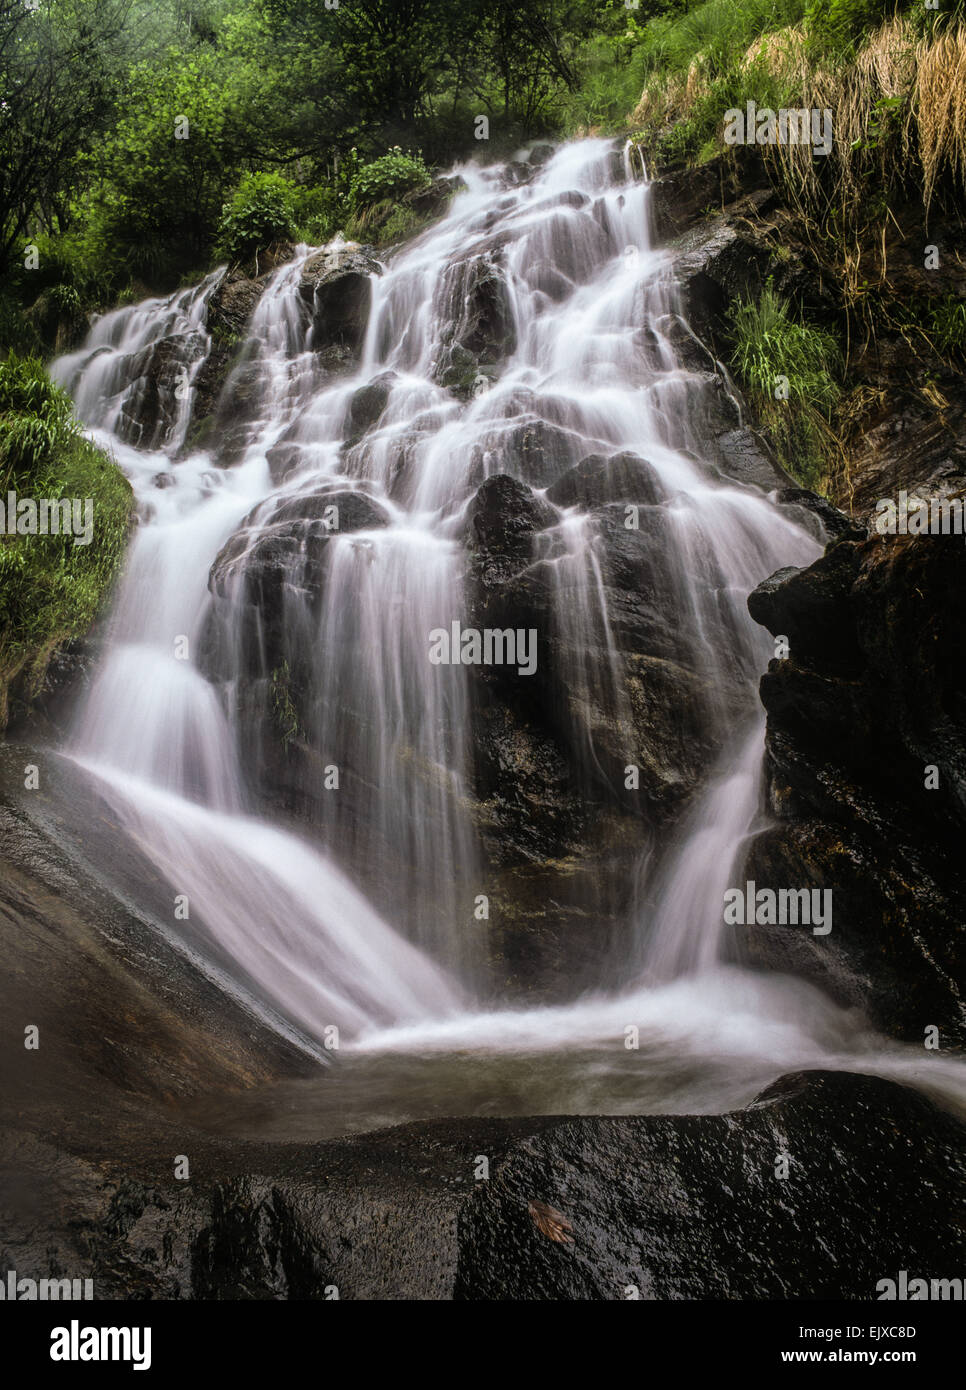 Esposizione lunga cascata shot con acqua liscia in esecuzione su rocce brutali in vivace verde bosco. medio formato paesaggio verticale Foto Stock